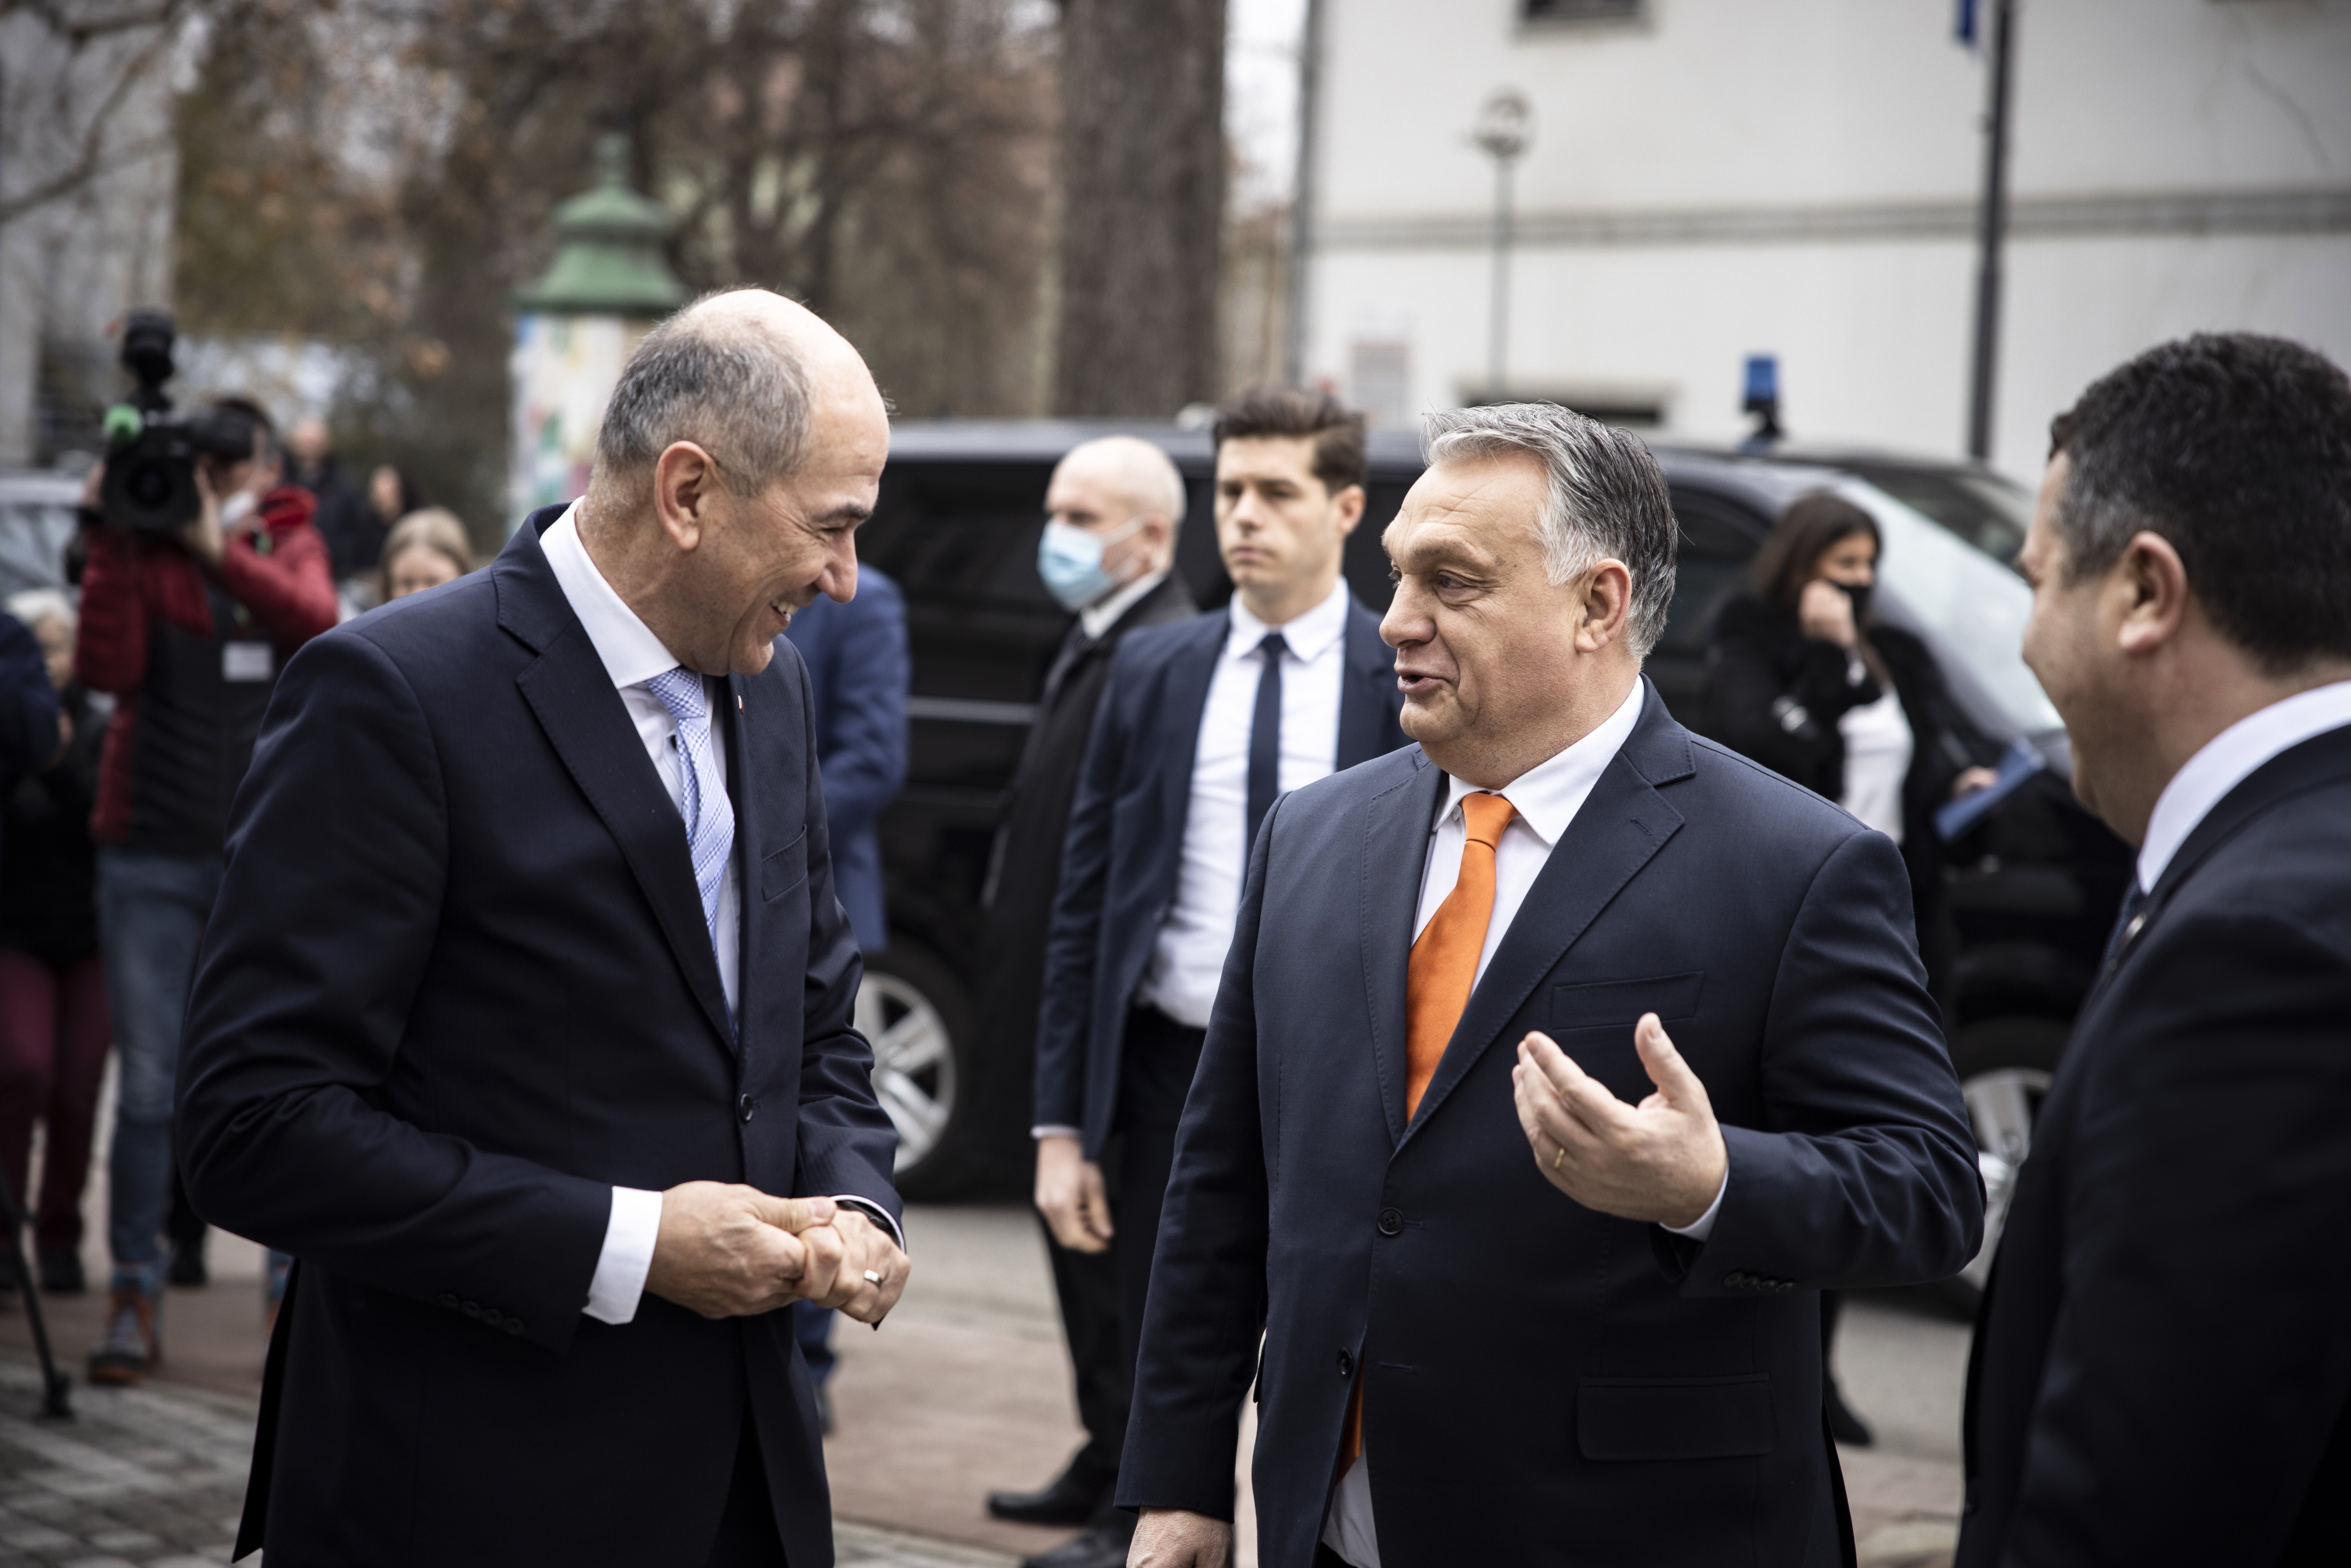 Súlyos vereséget szenvedett Orbán szlovén szövetségese